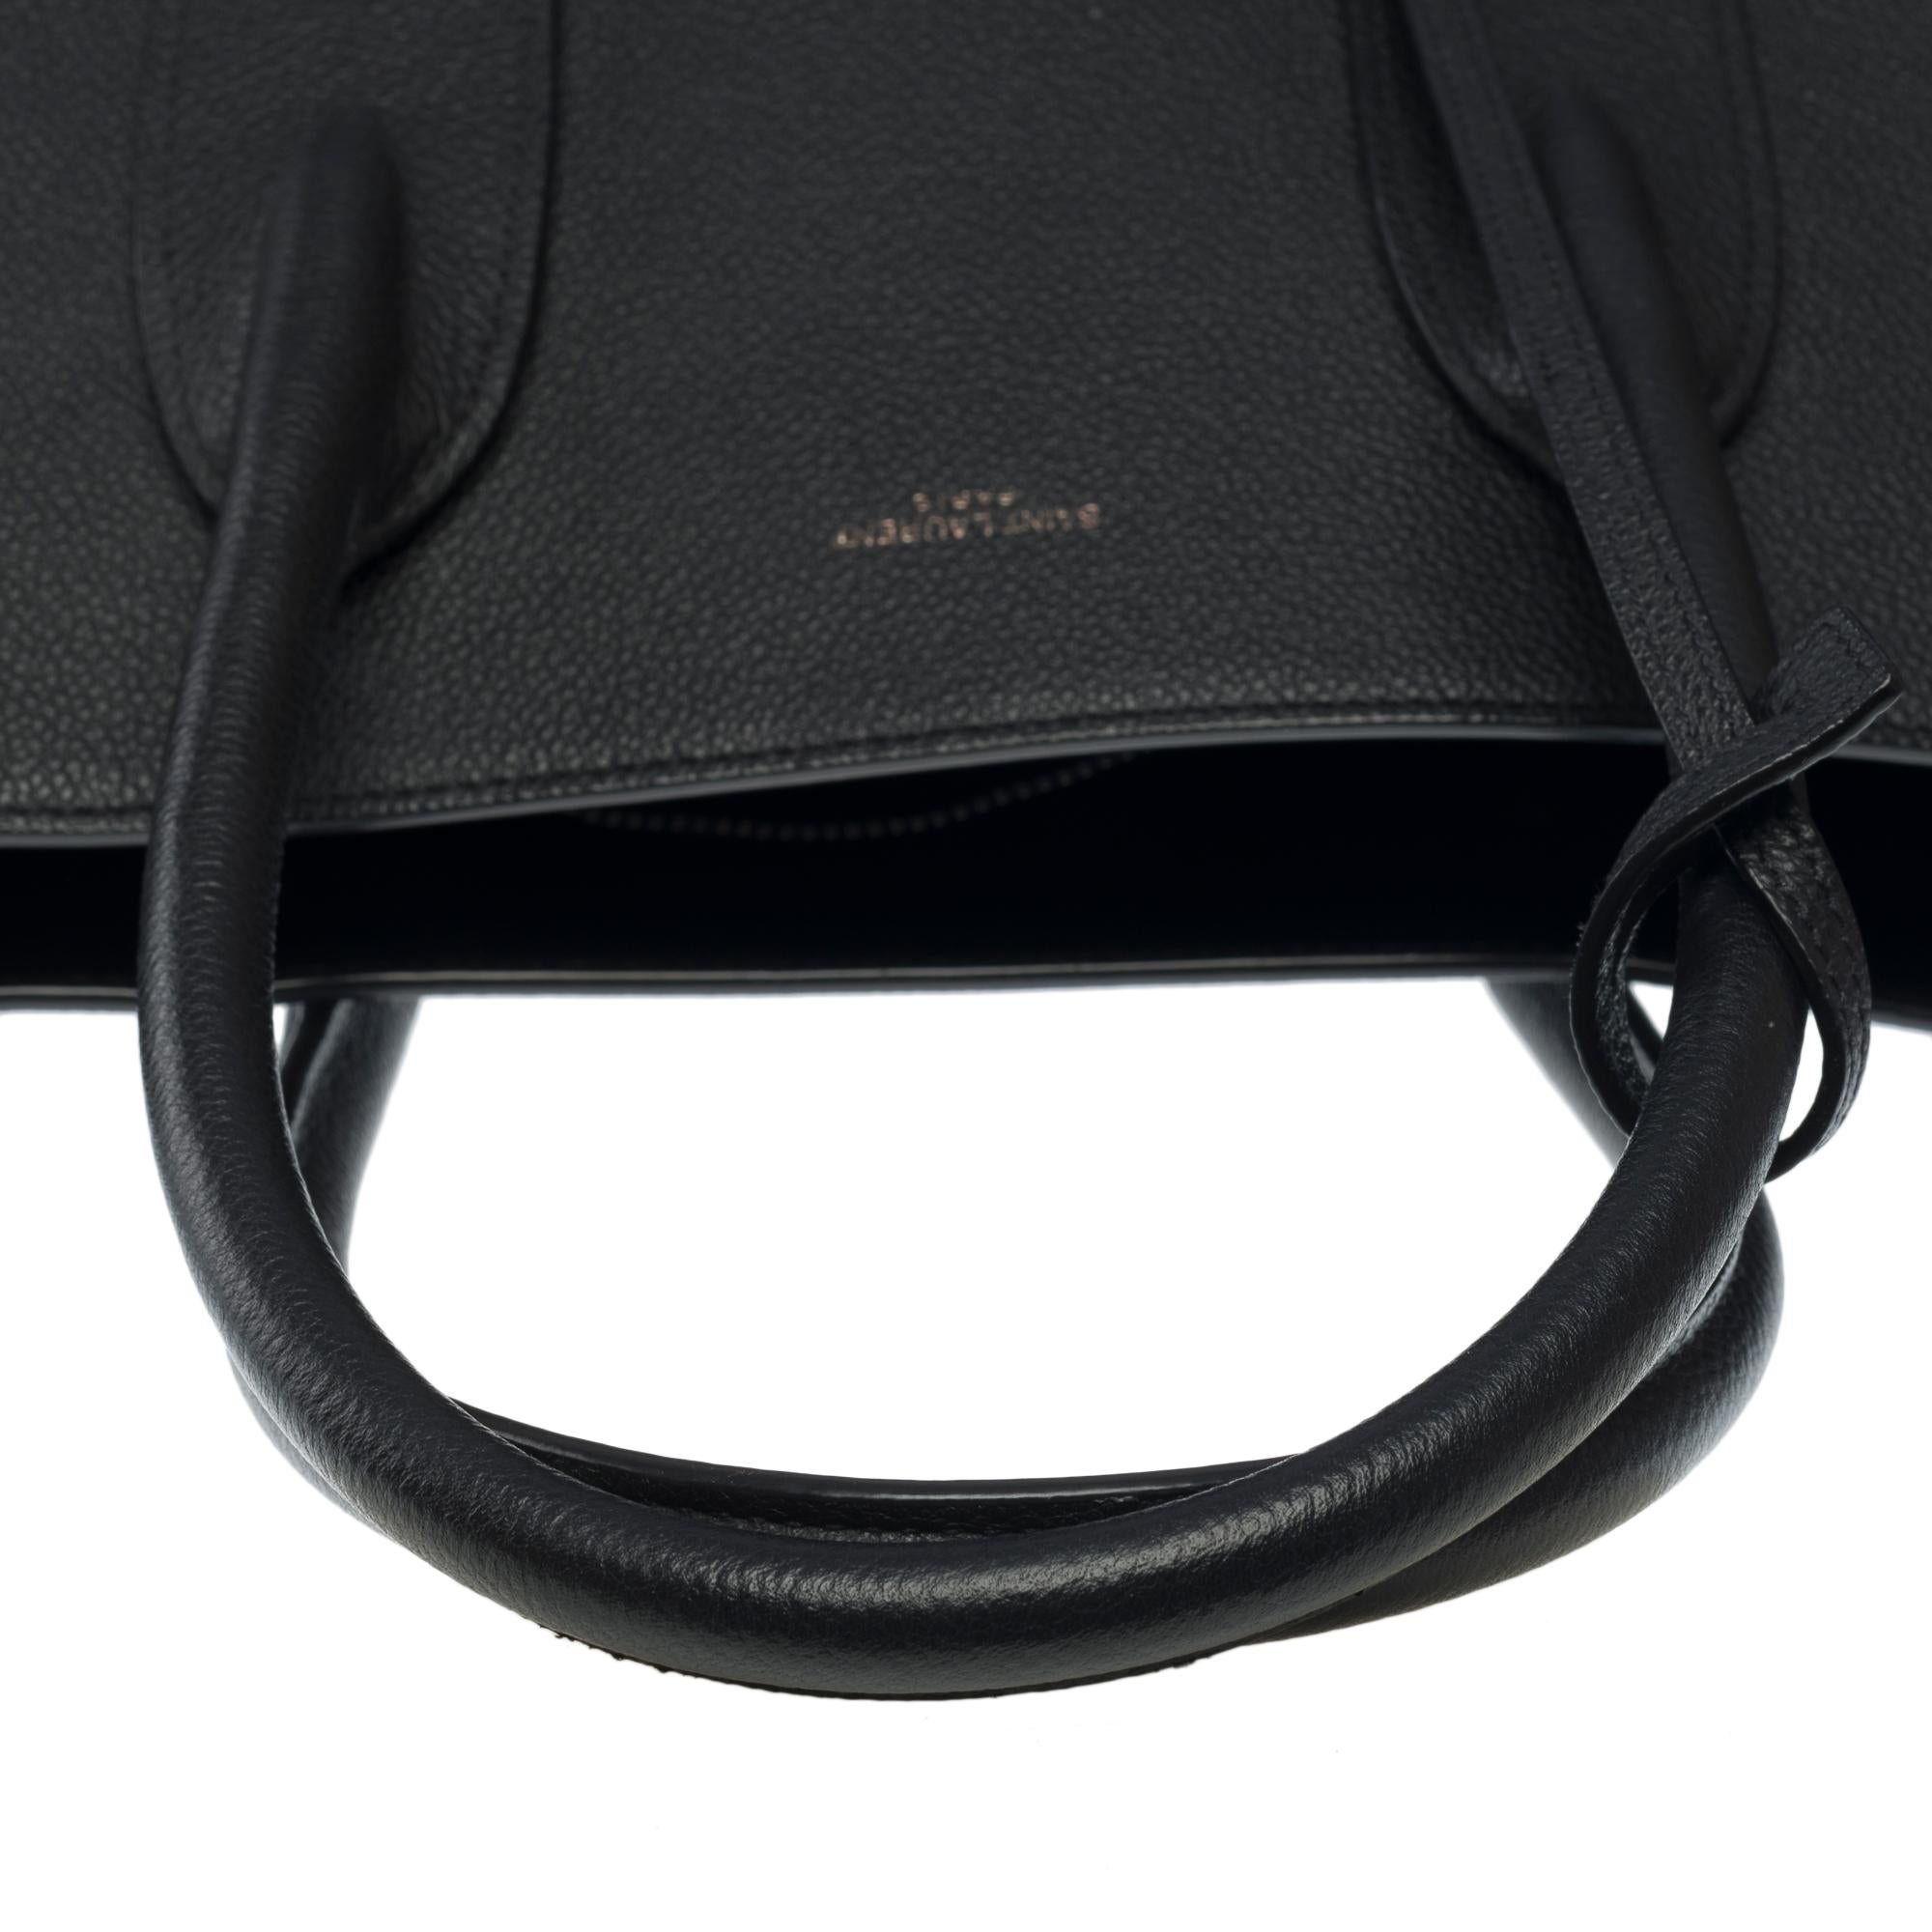 Saint Laurent Sac de Jour Large size handbag strap in black grained leather 5